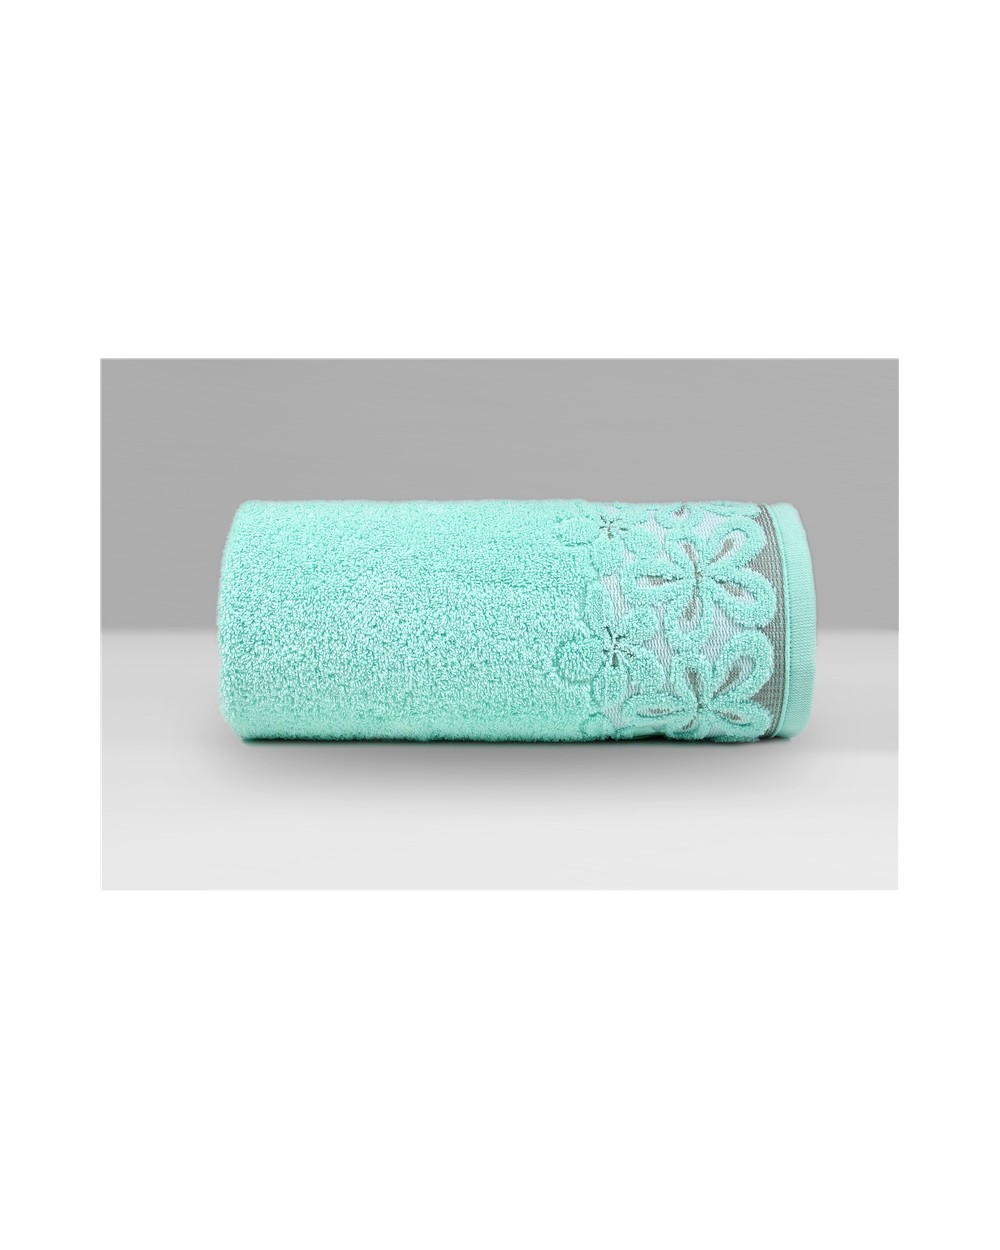 Ręcznik Bella mikrobawełna 70x140 miętowy